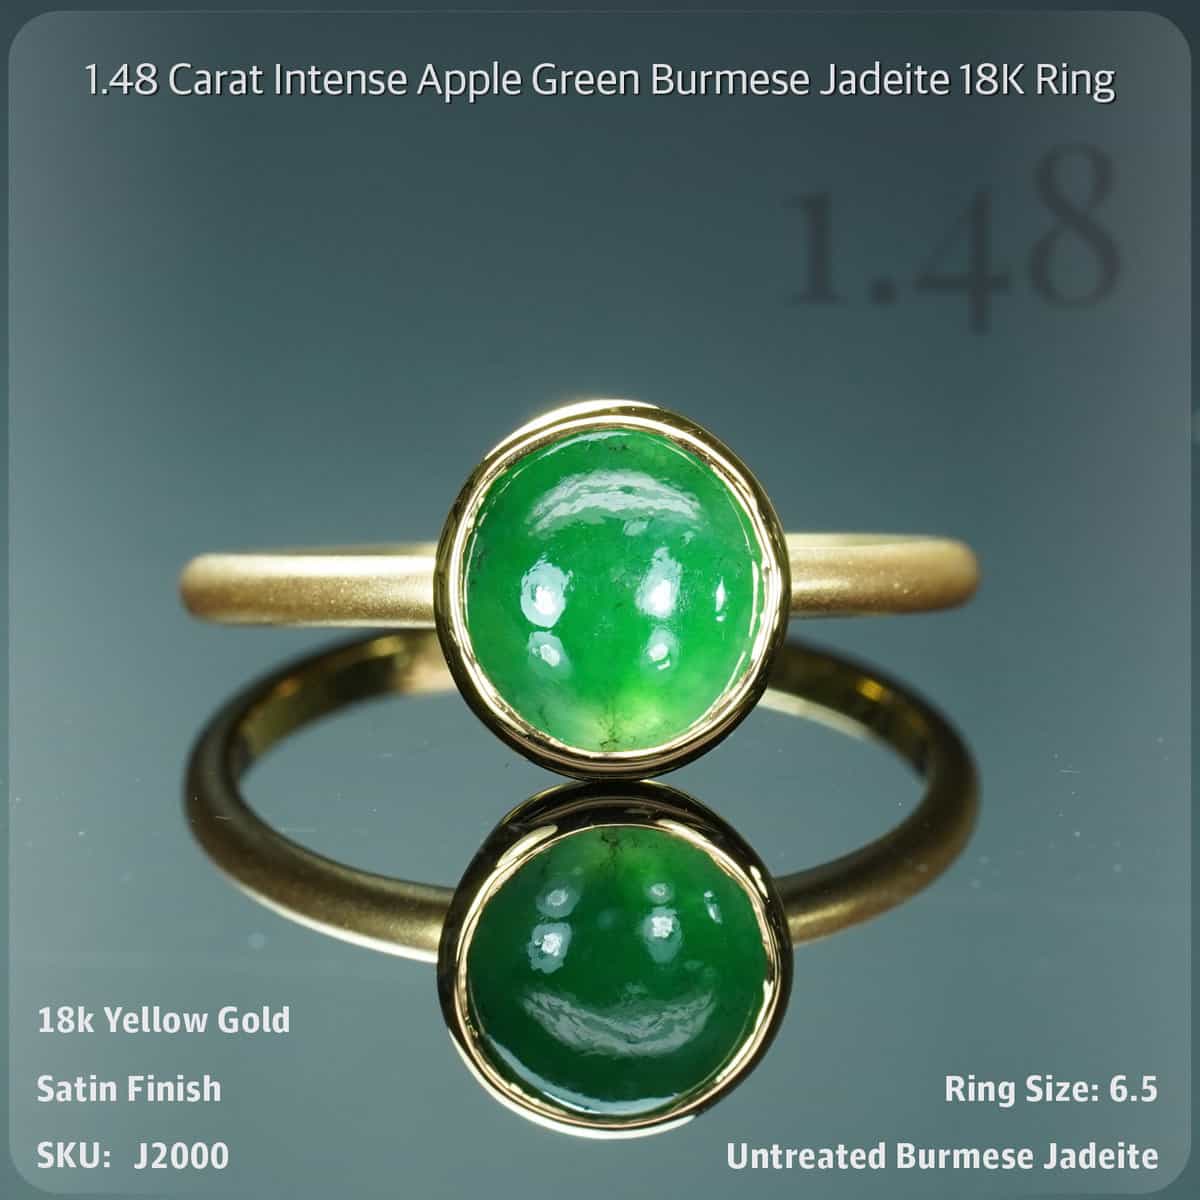 1.48 Carat Intense Apple Green Burmese Jadeite 18K Ring